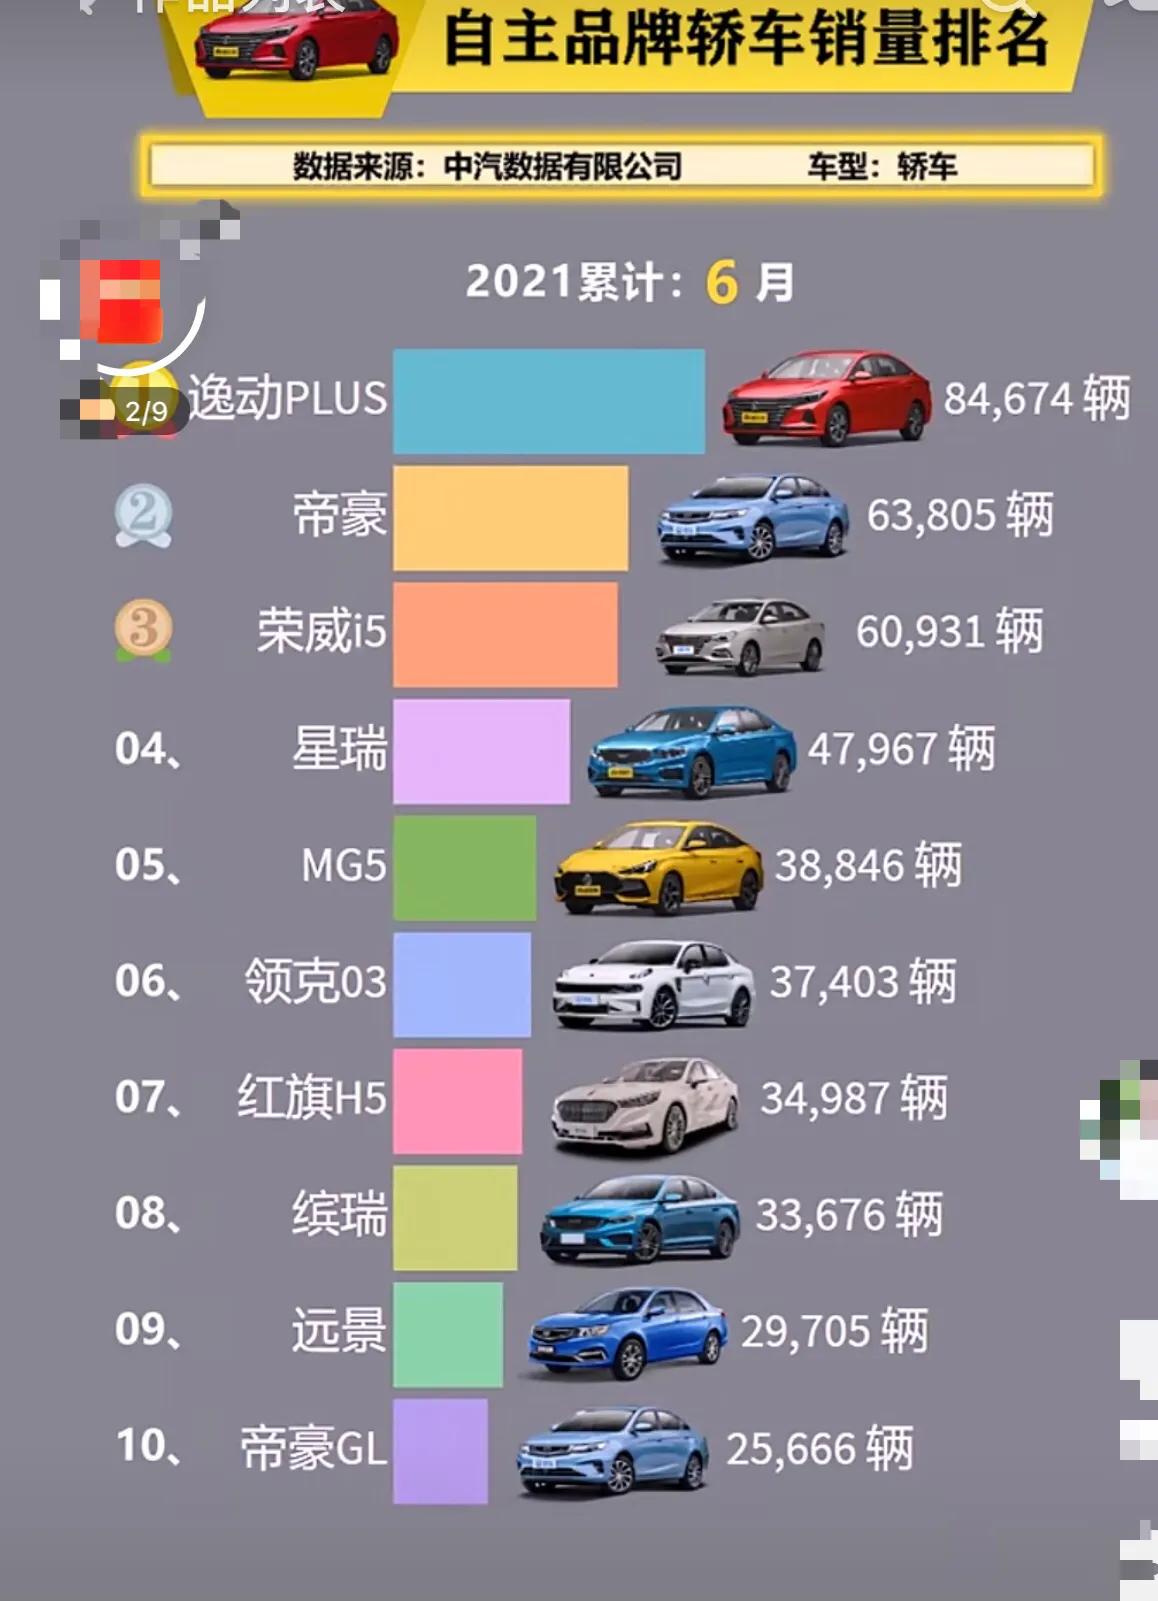 中国自主品牌轿车销量排名国产车逐步崛起我要上微头条汽车财经